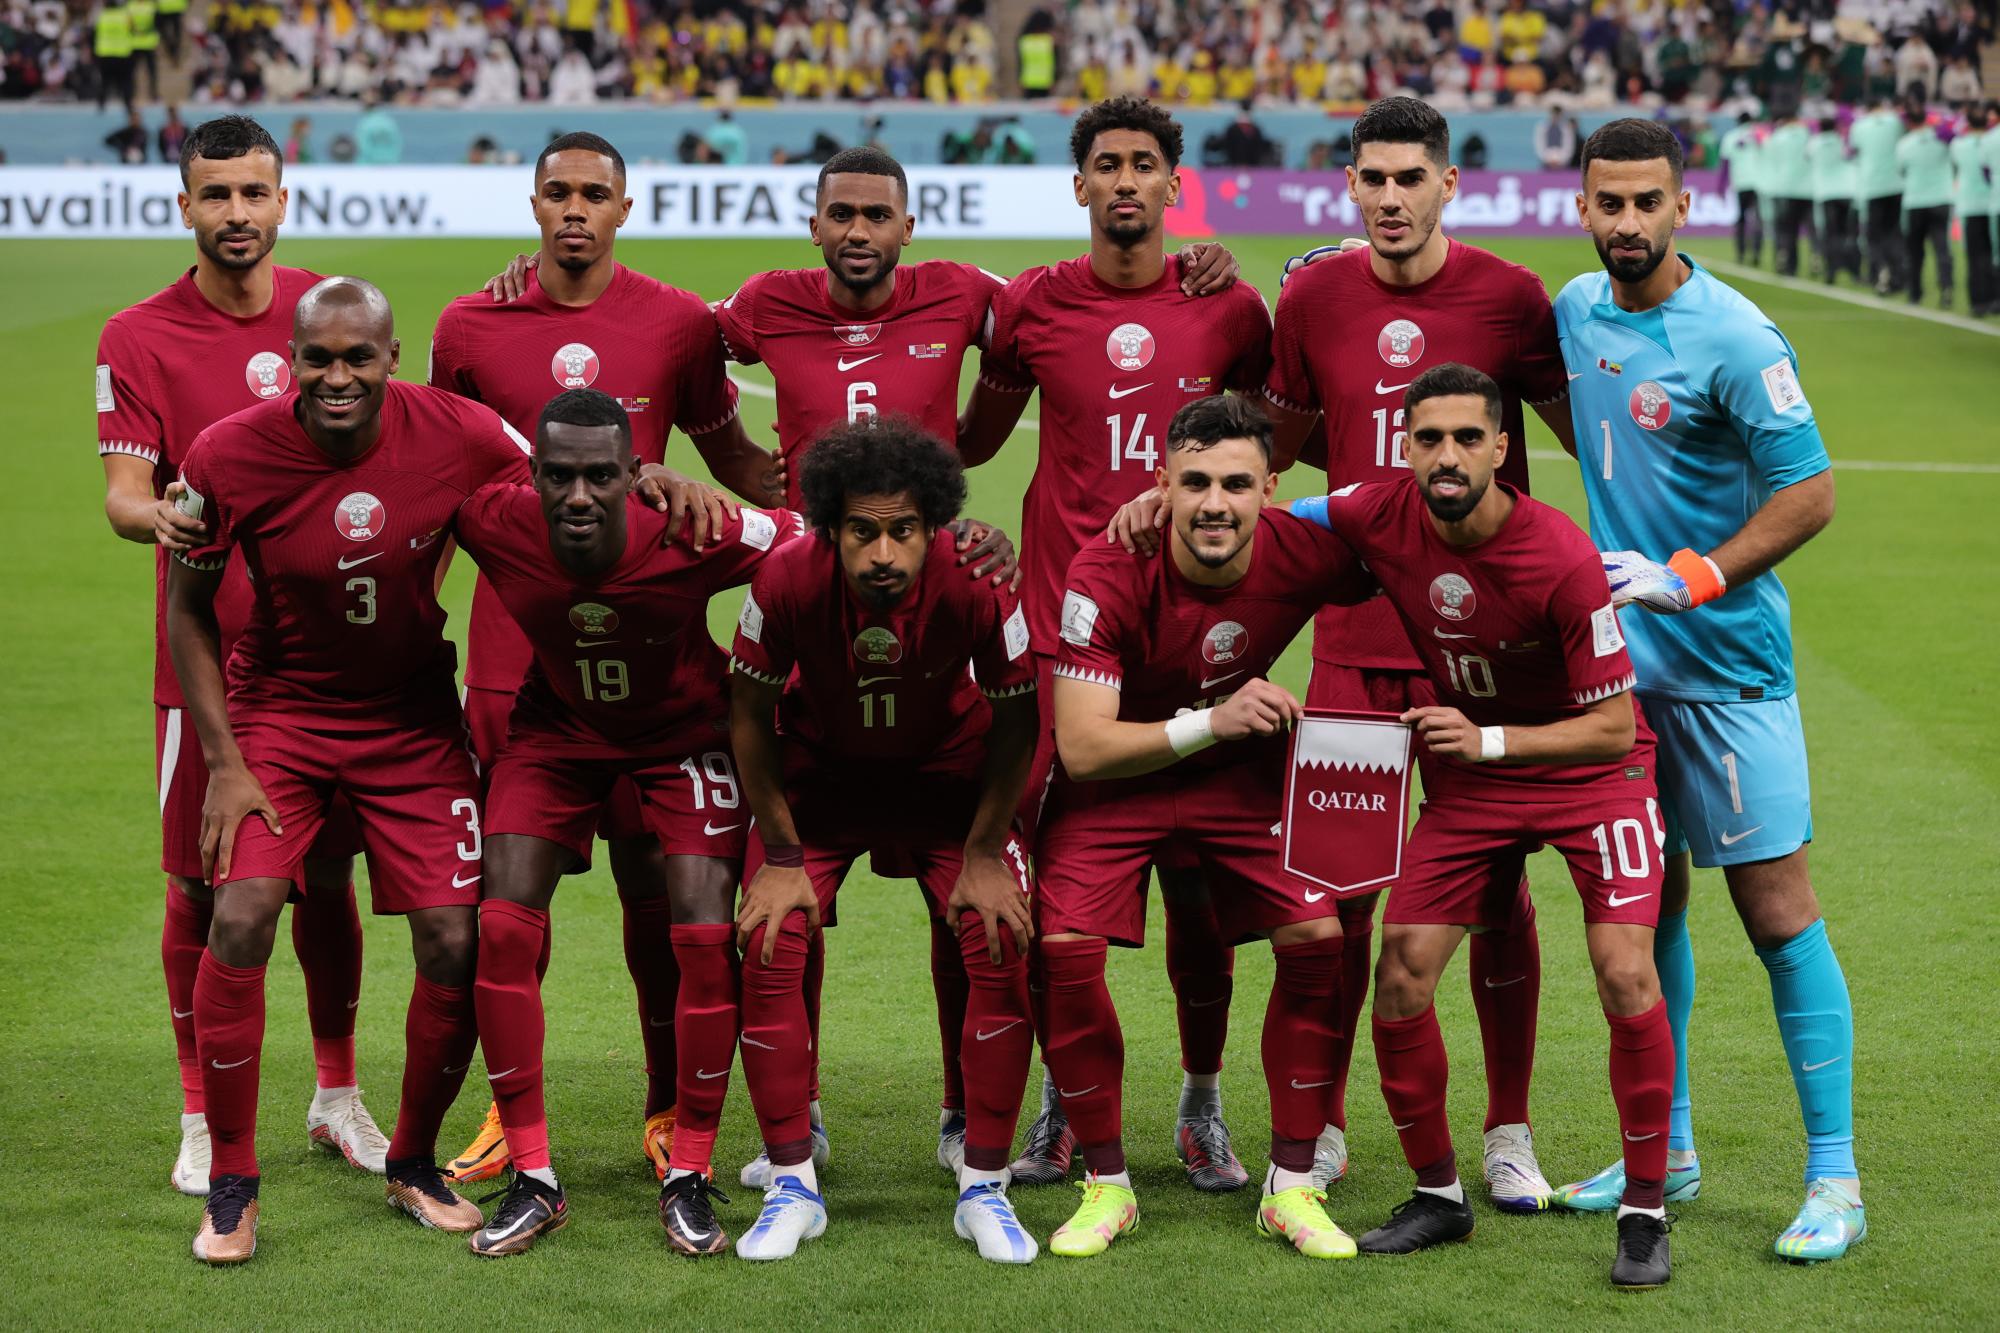 La anfitriona Qatar se juega una final ante Senegal. La selección que pierde estará eliminada del Mundial.